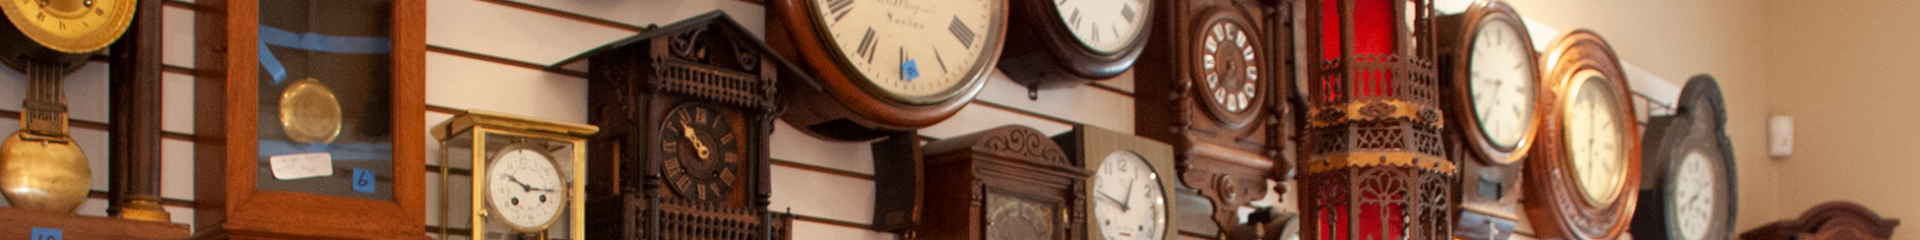 jp clock shop - antique clock repairs